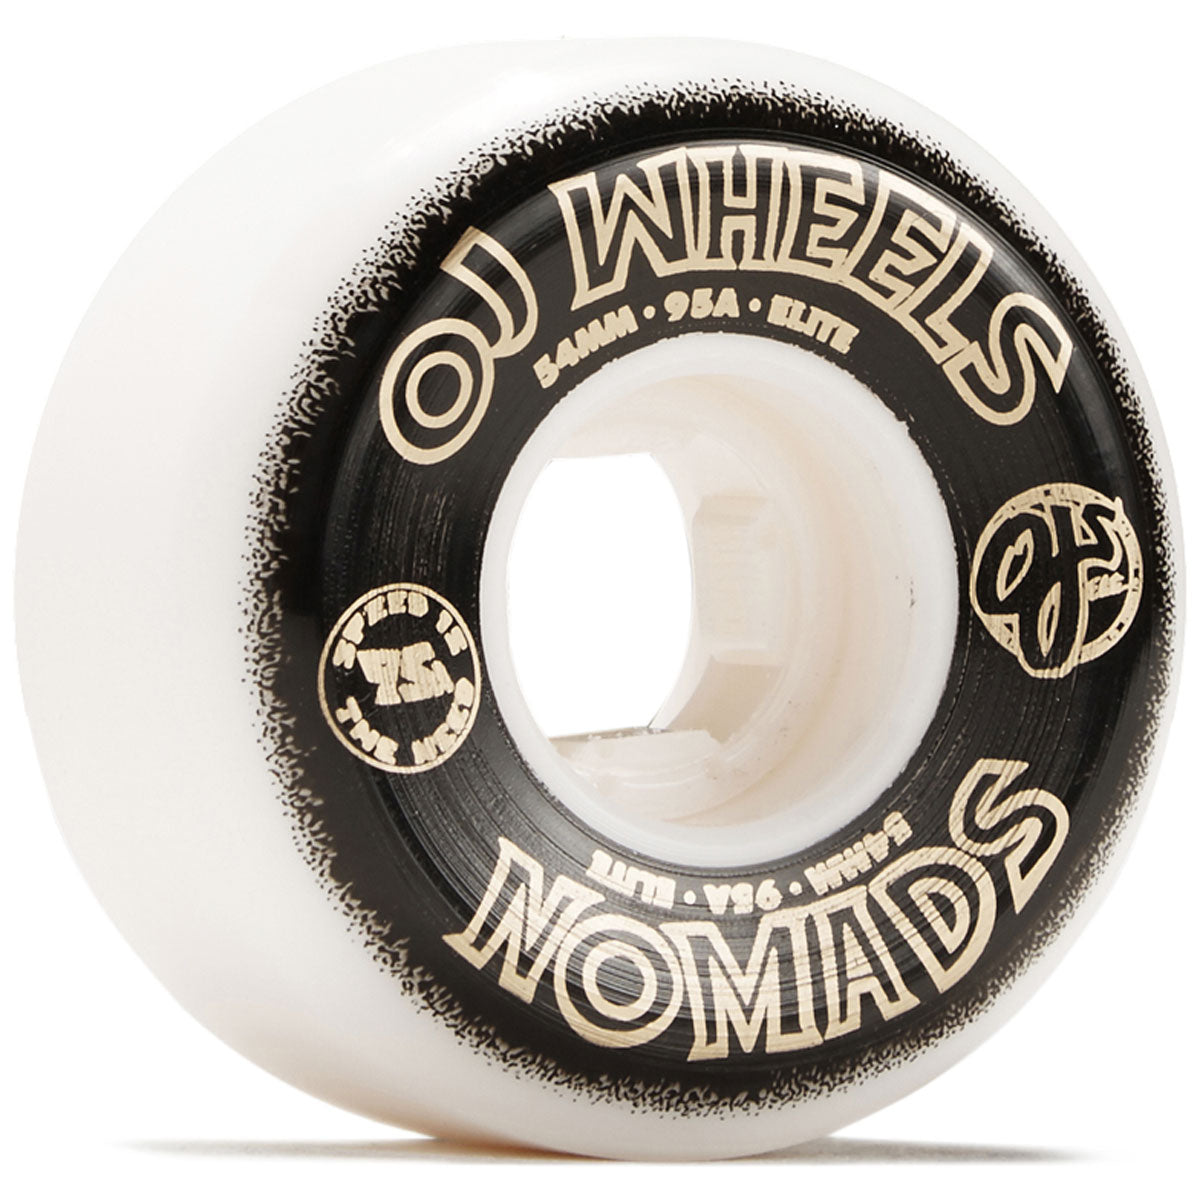 OJ Elite Nomads 95a Skateboard Wheels - 54mm image 1